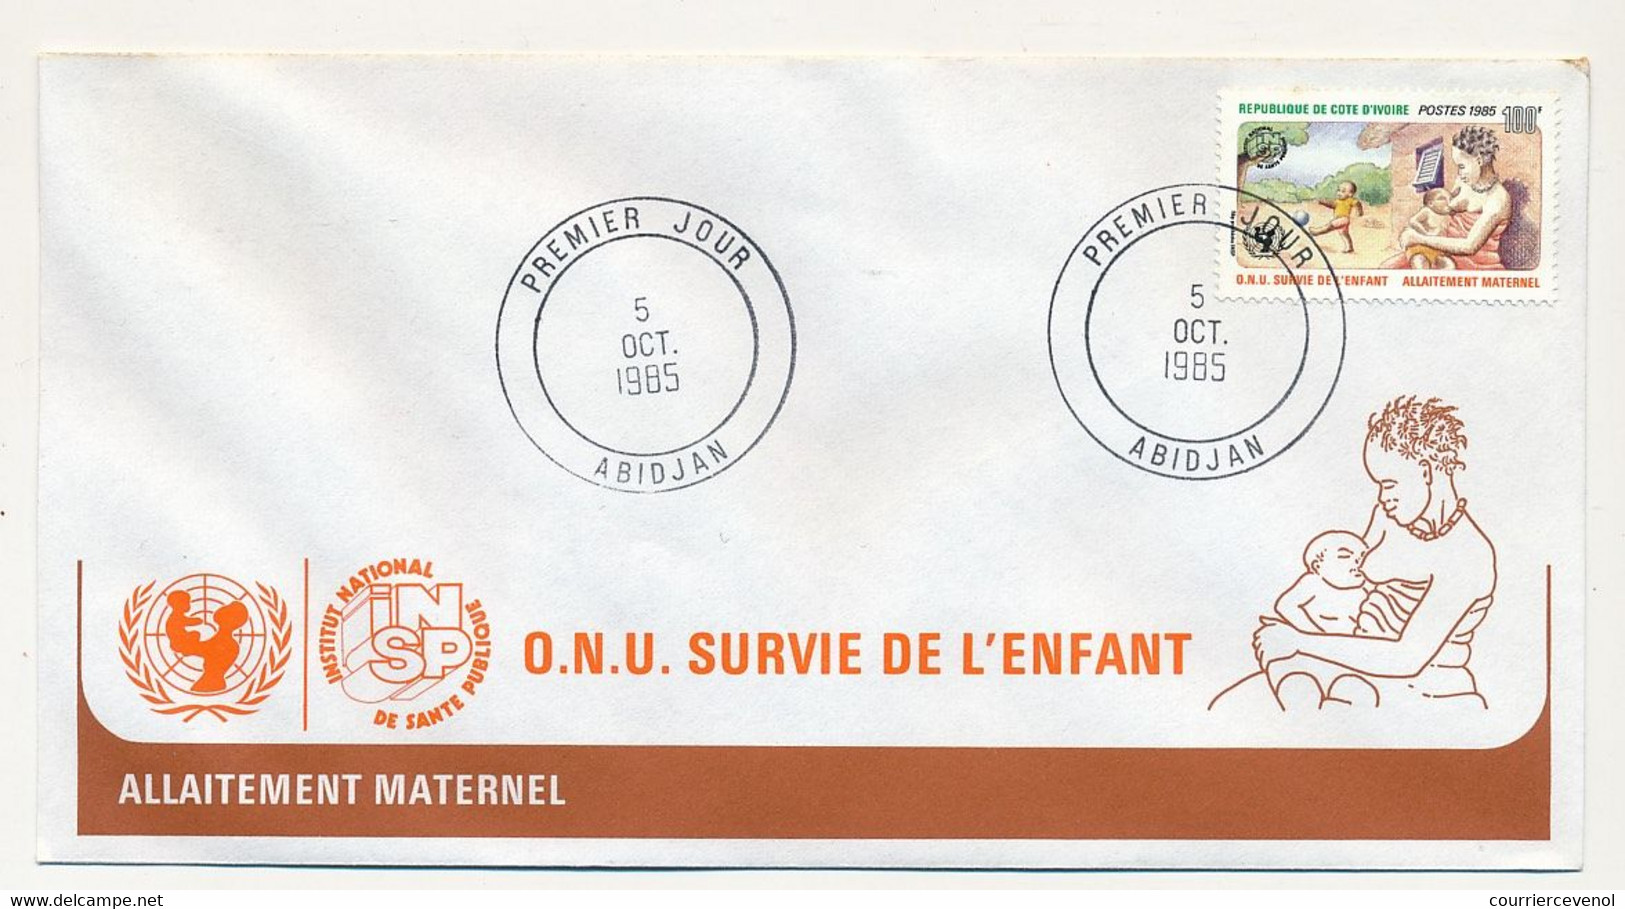 CÔTE D'IVOIRE - 4 Env FDC - 4 Valeurs O.N.U - Survie De L'enfant - 5 Octobre 1985 - Abidjan - Ivory Coast (1960-...)